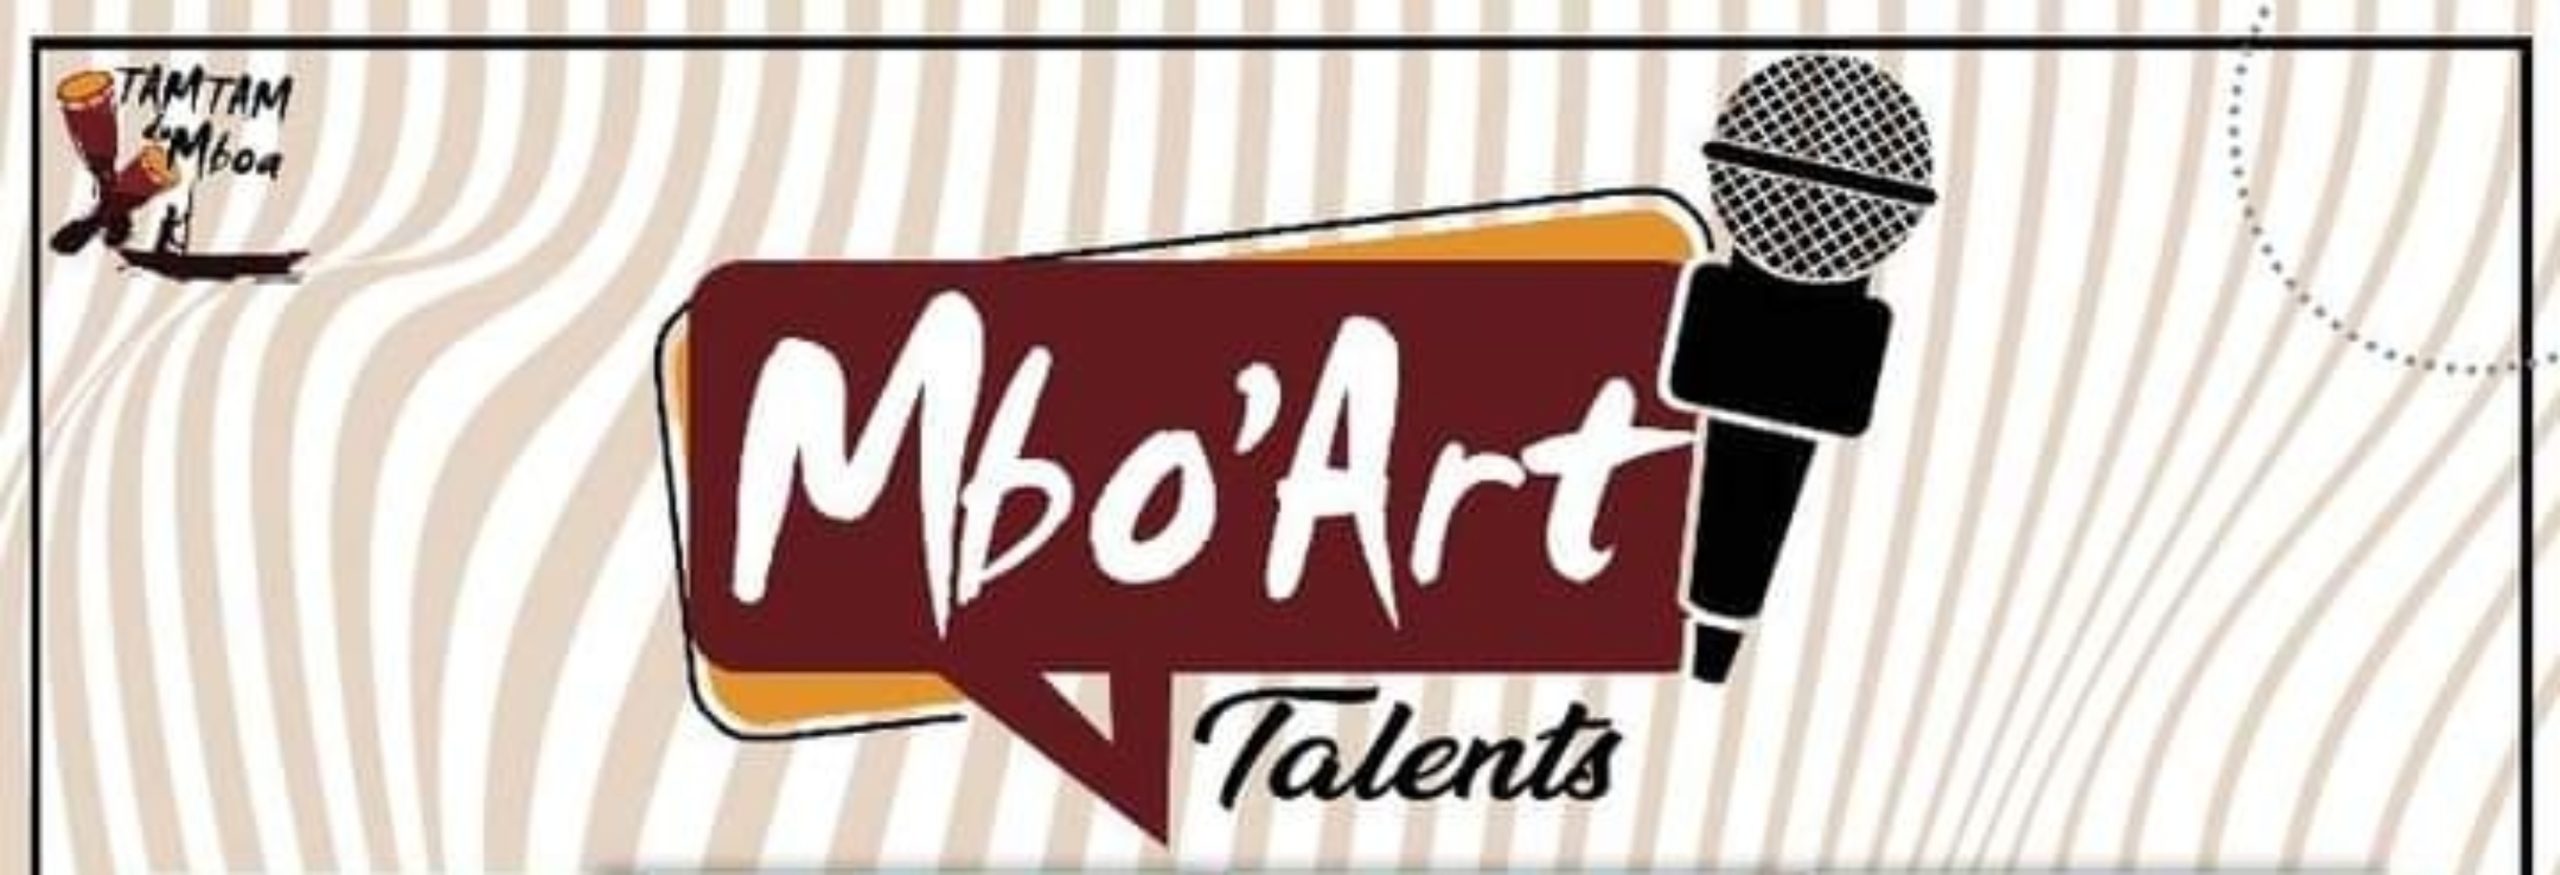 MBO’ART Talents : l’émission des stars de demain 237